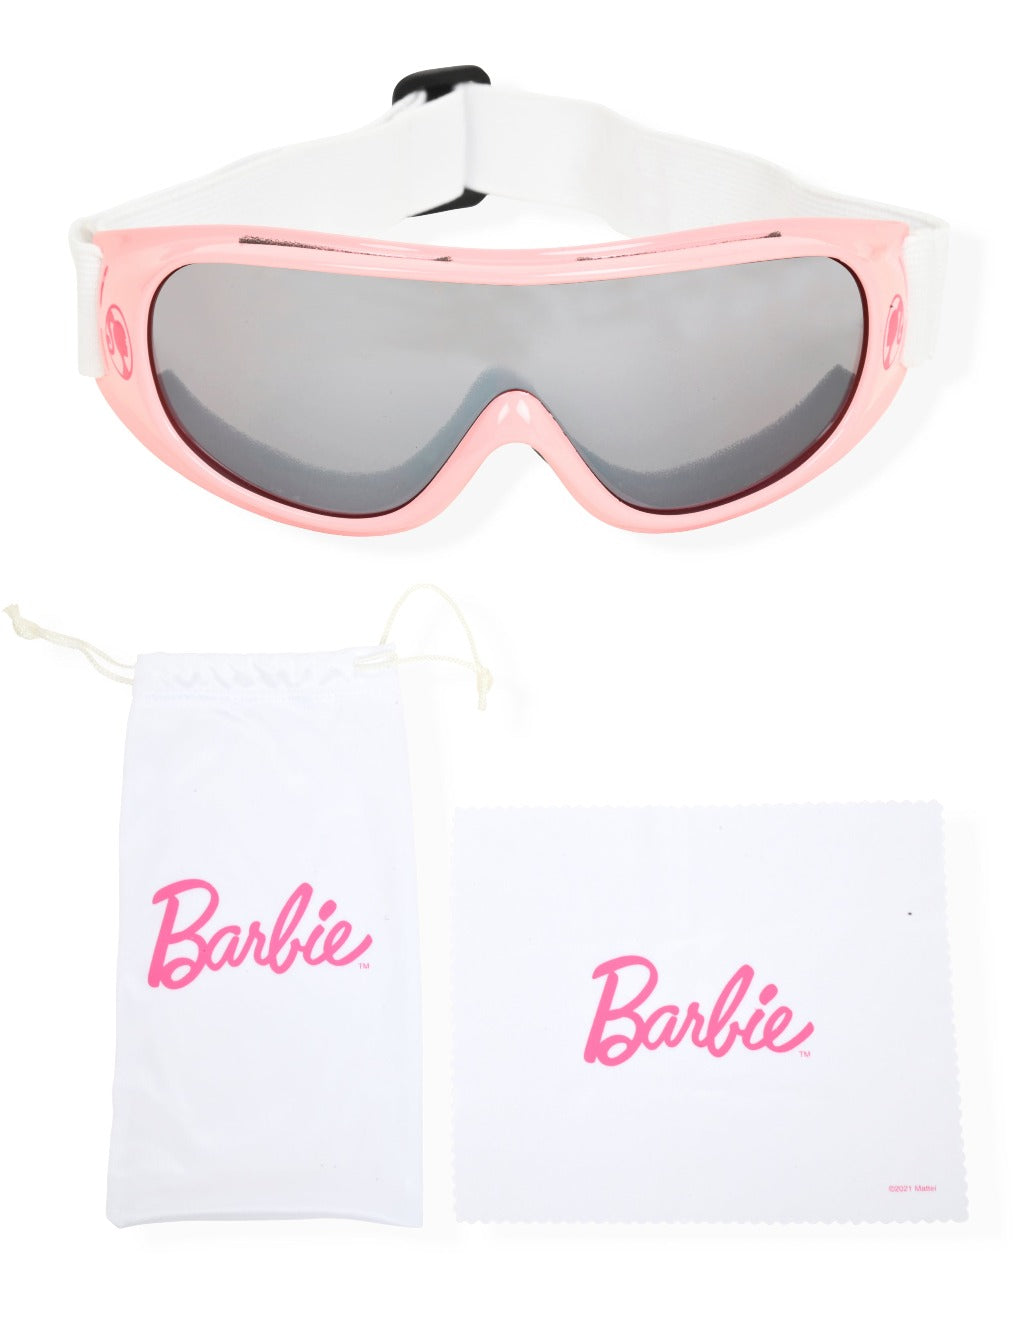 
                  
                    Ski goggles set for girls
                  
                